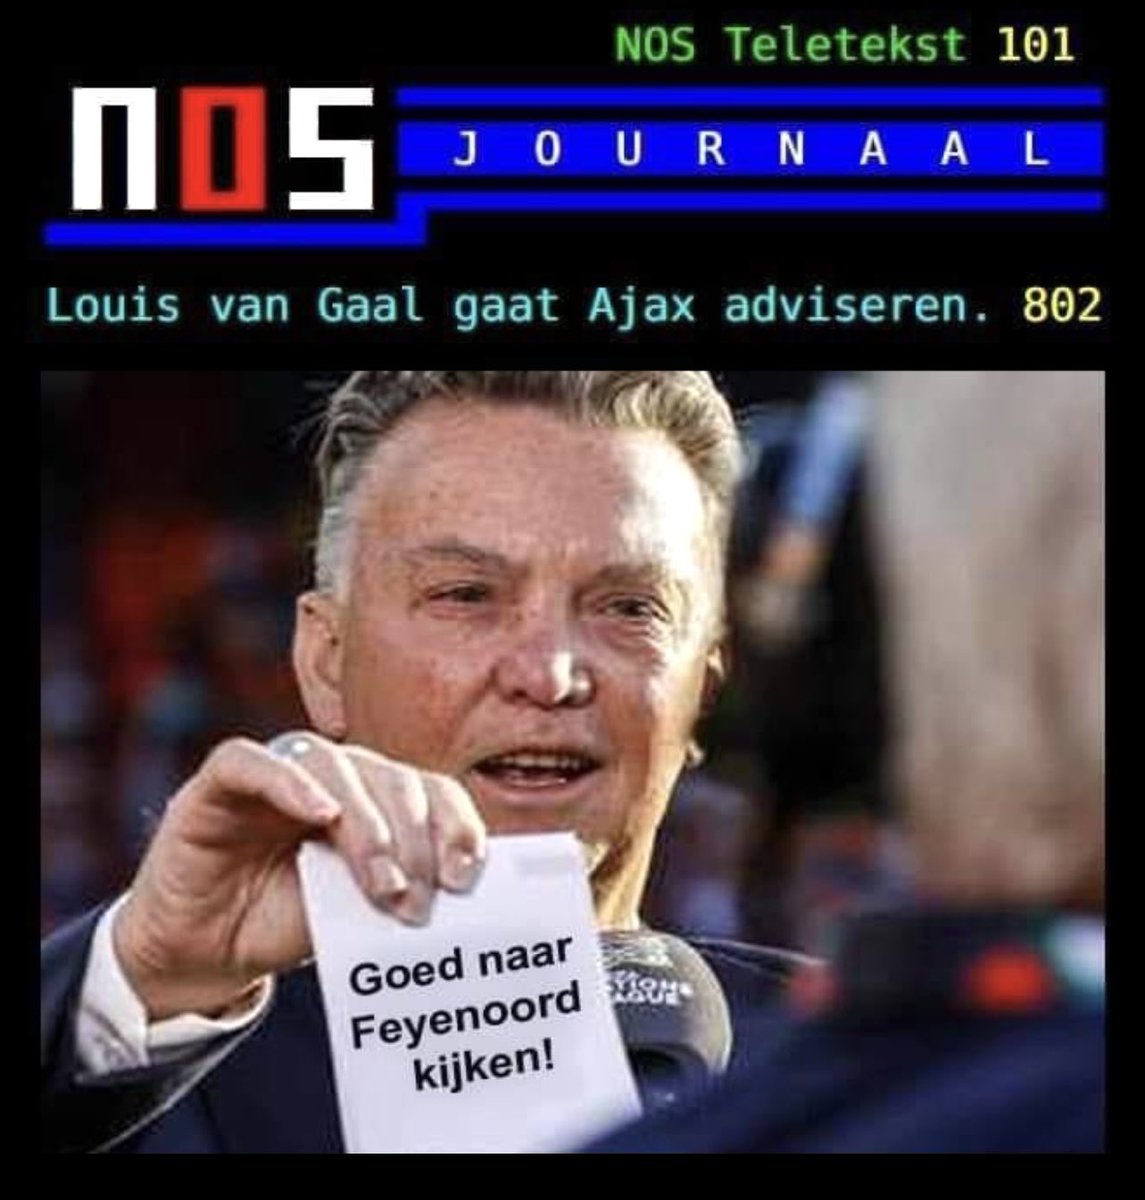 😅😂🤣 #LouisVanGaal
#Ajax #Feyenoord #voetbal ⚽️